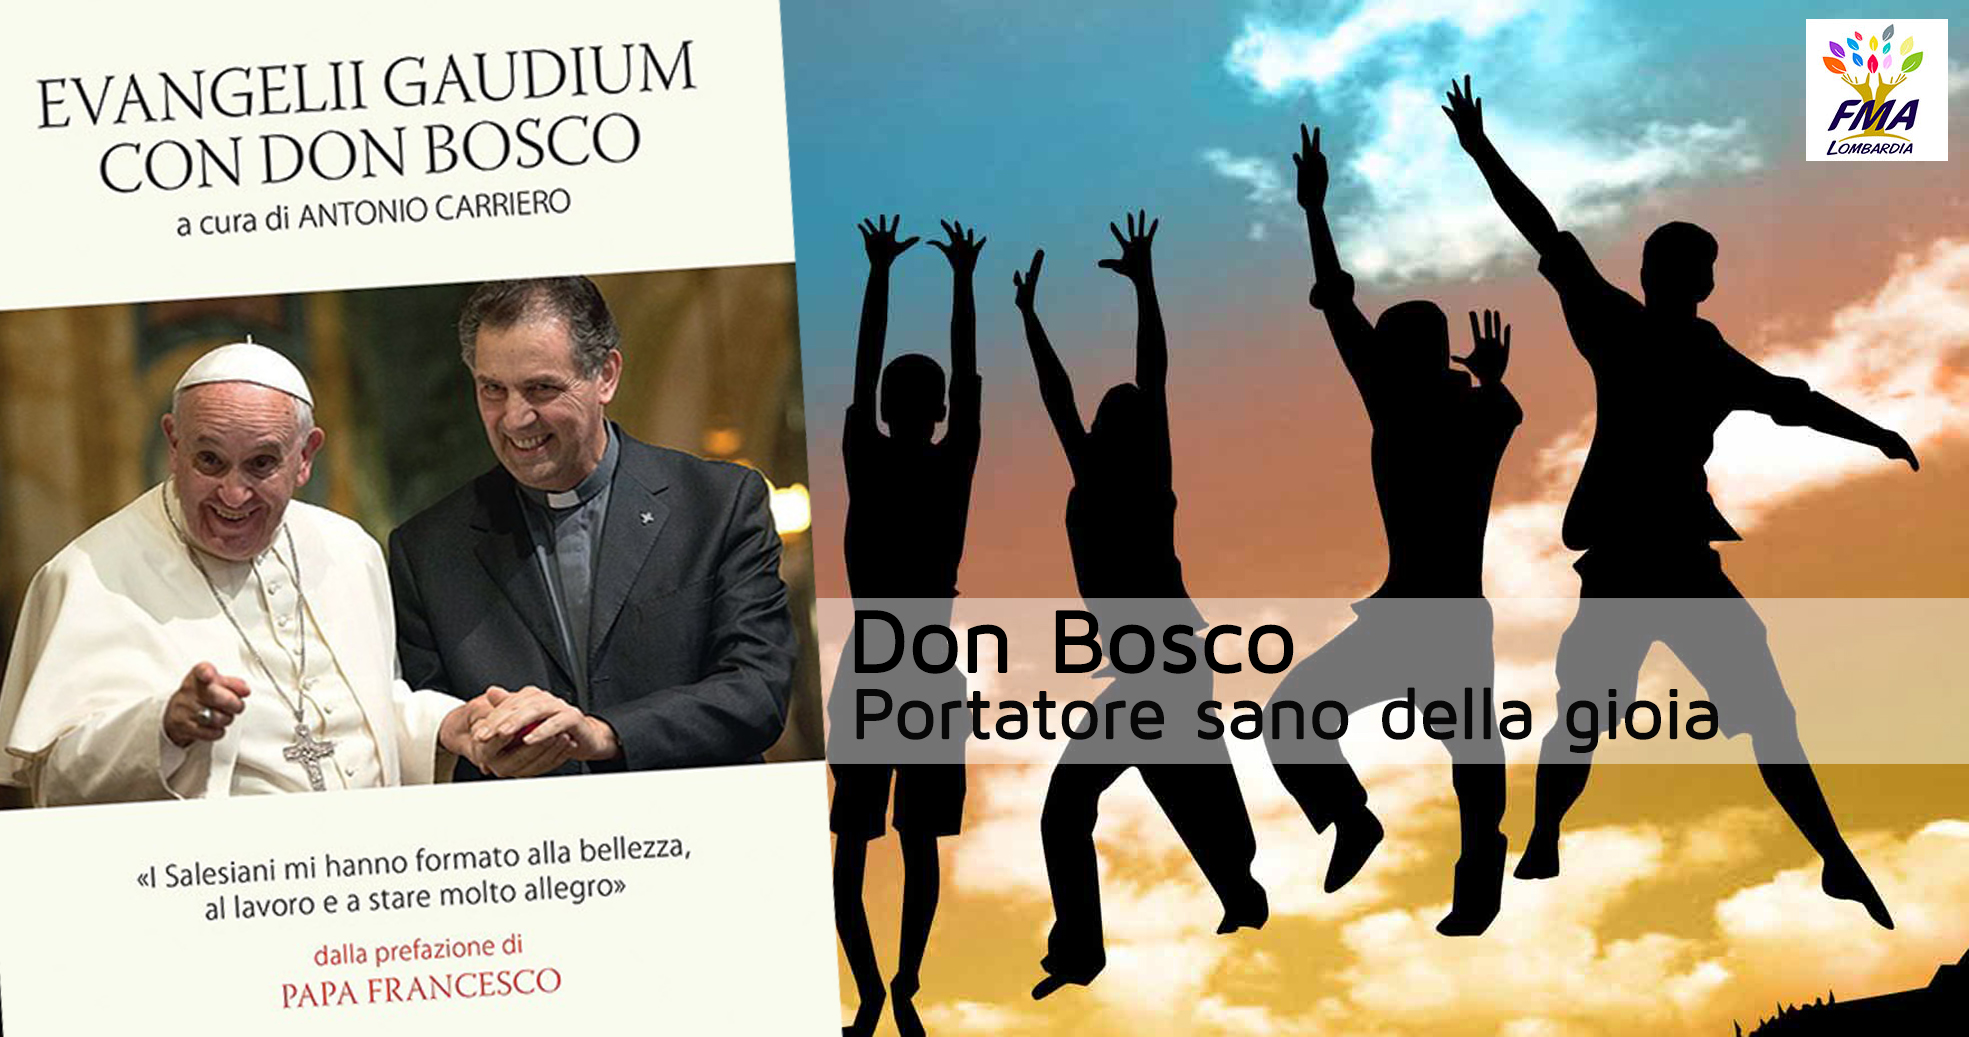 Don Bosco portatore sano della gioia